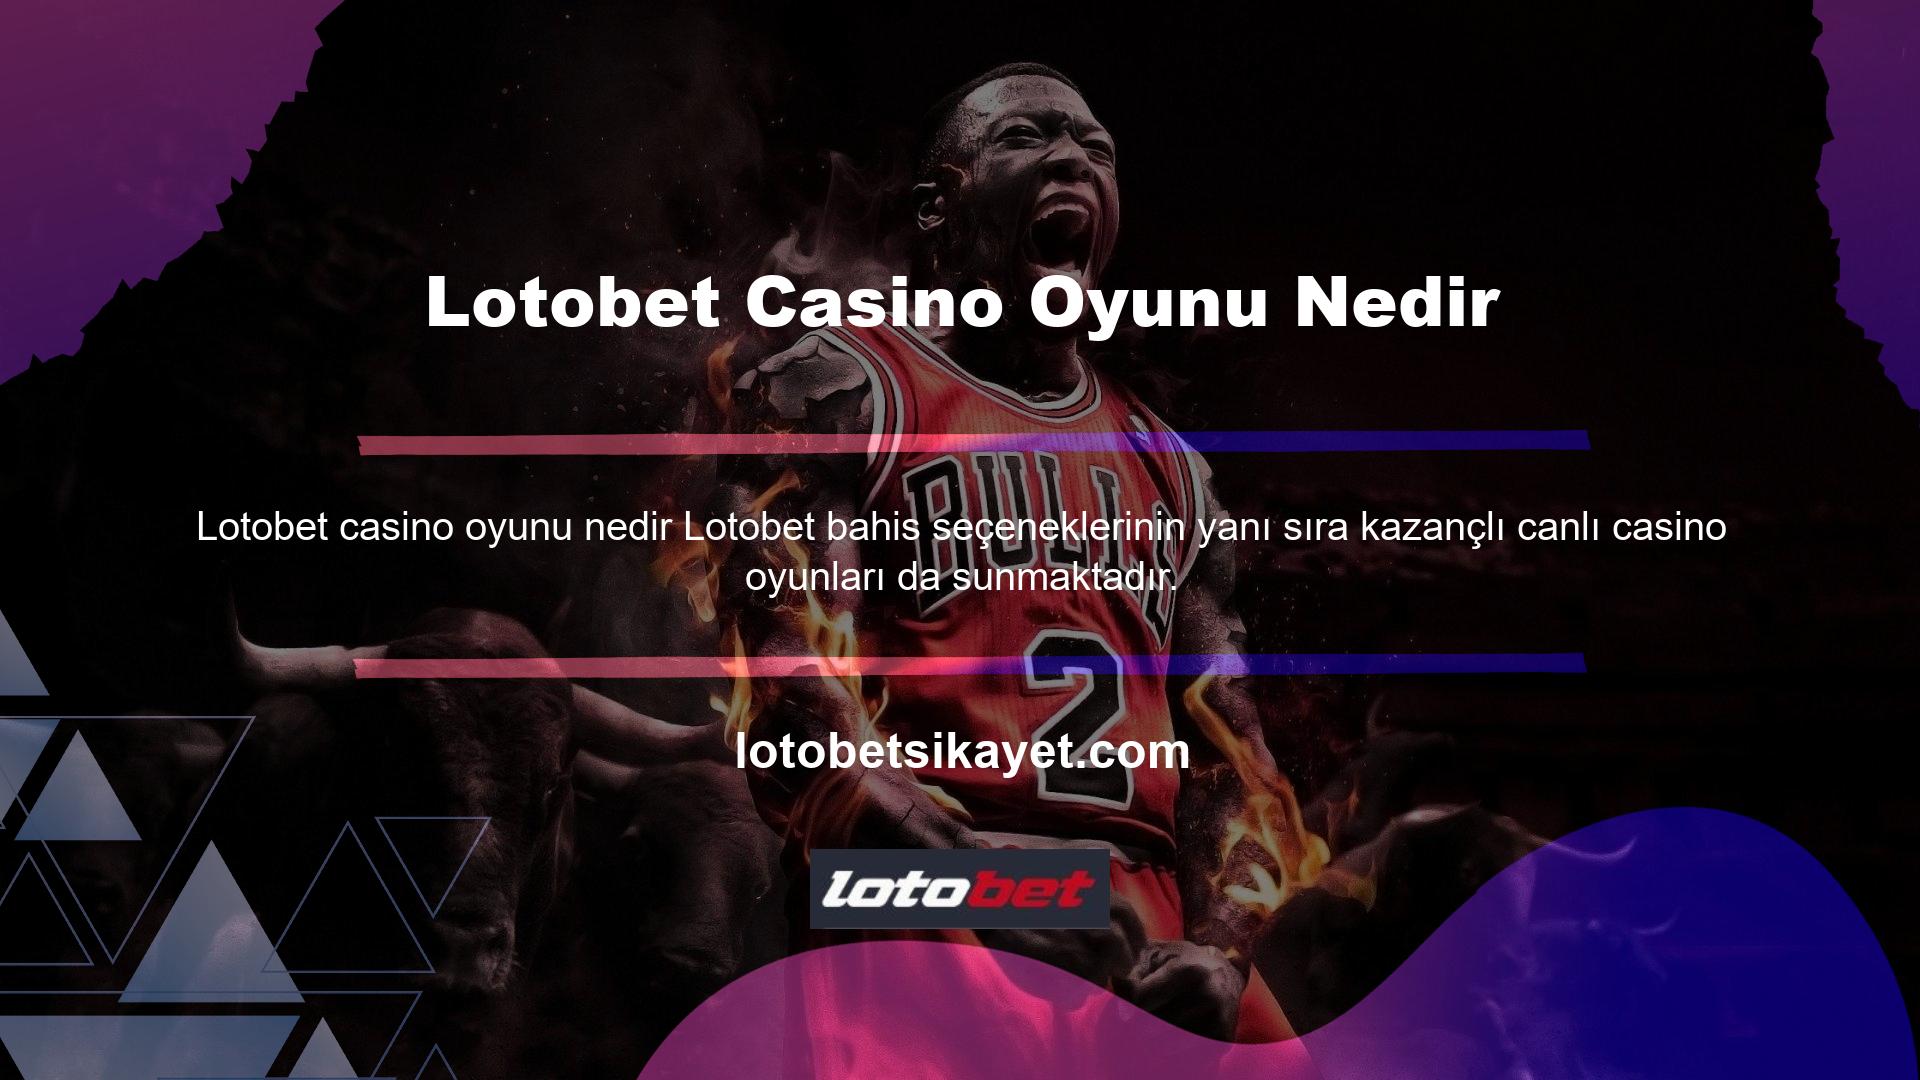 Lotobet canlı casino oyunları bölümü, kullanıcıların ve oyuncuların ilgisini çeken tüm popüler oyun seçeneklerini içerir